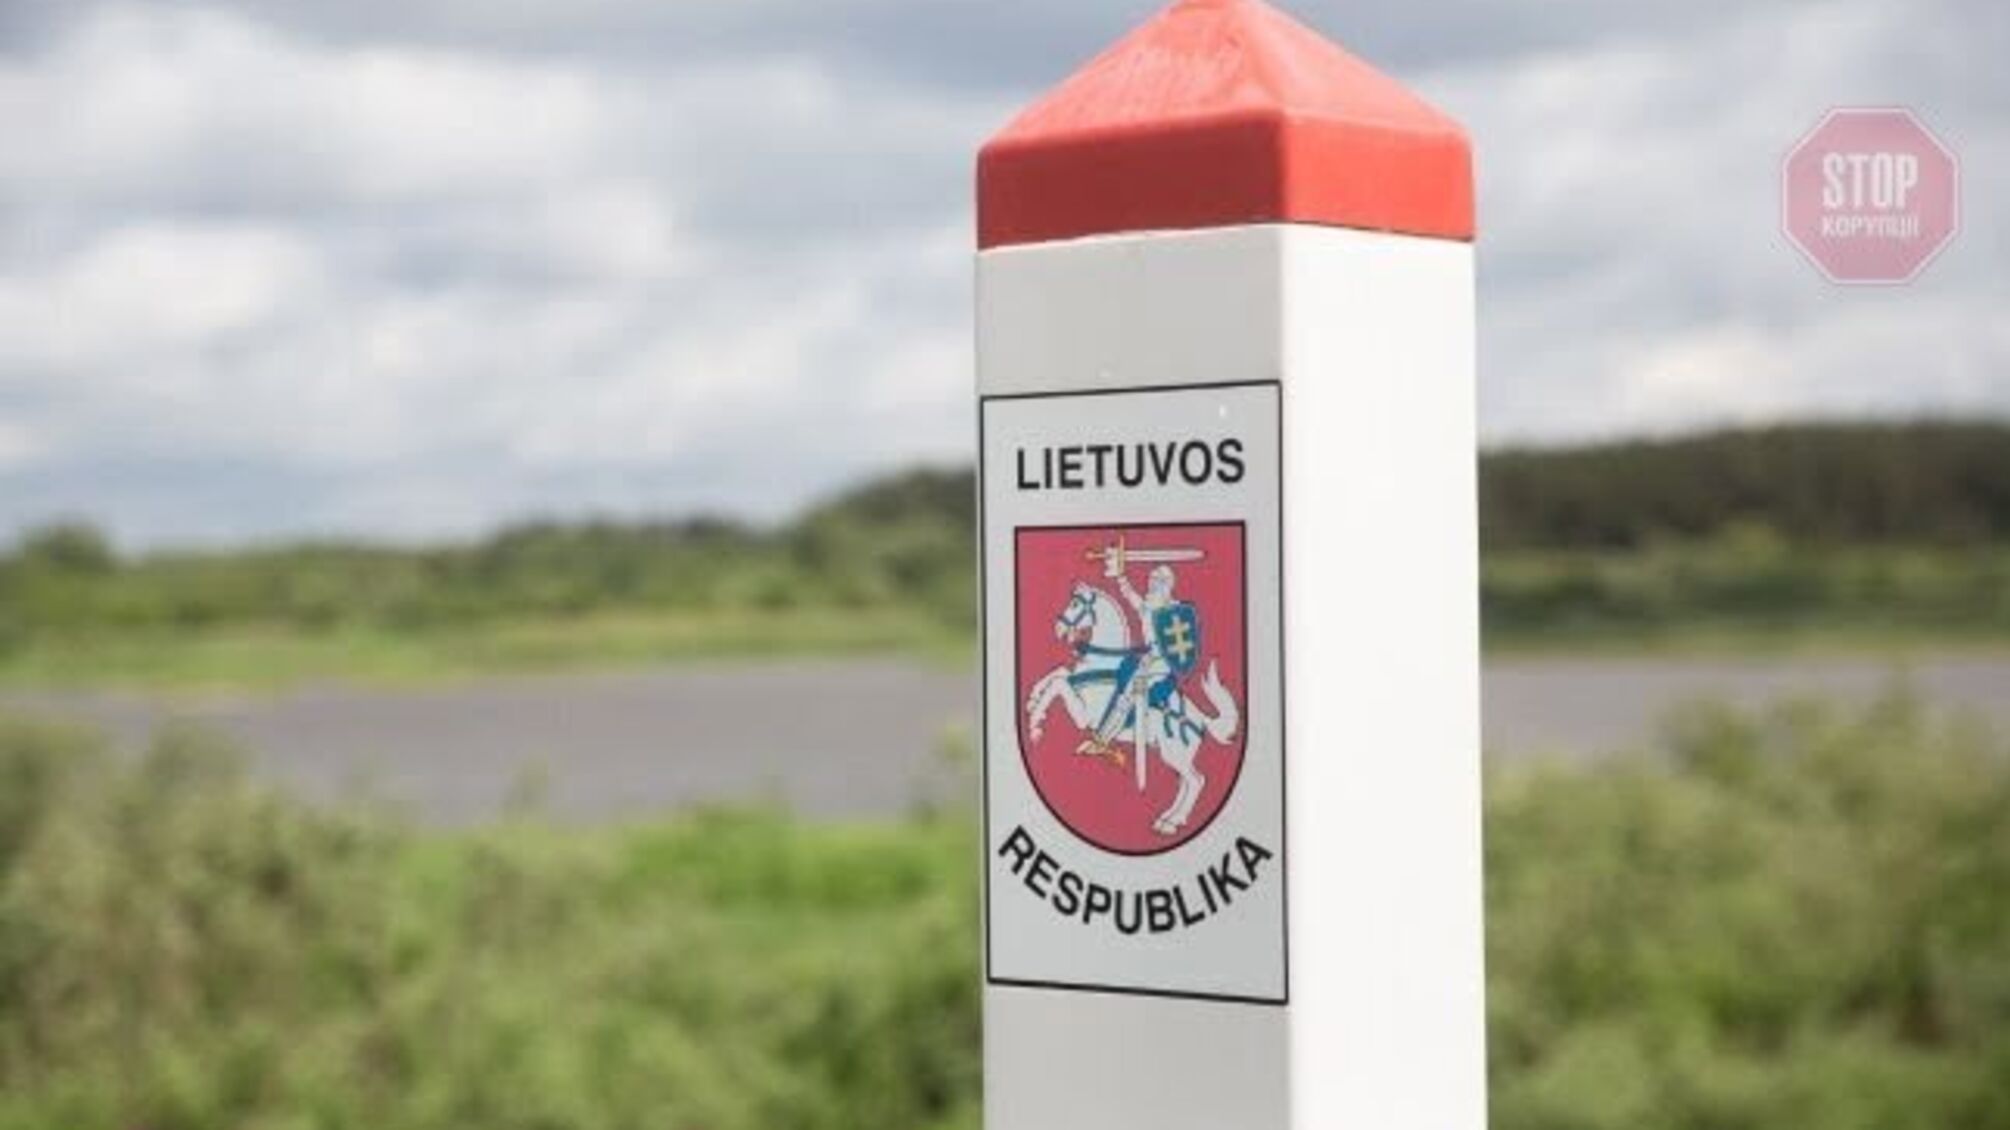 Поток мигрантов из Беларуси: эстонская полиция прибыла в Литву для защиты границы